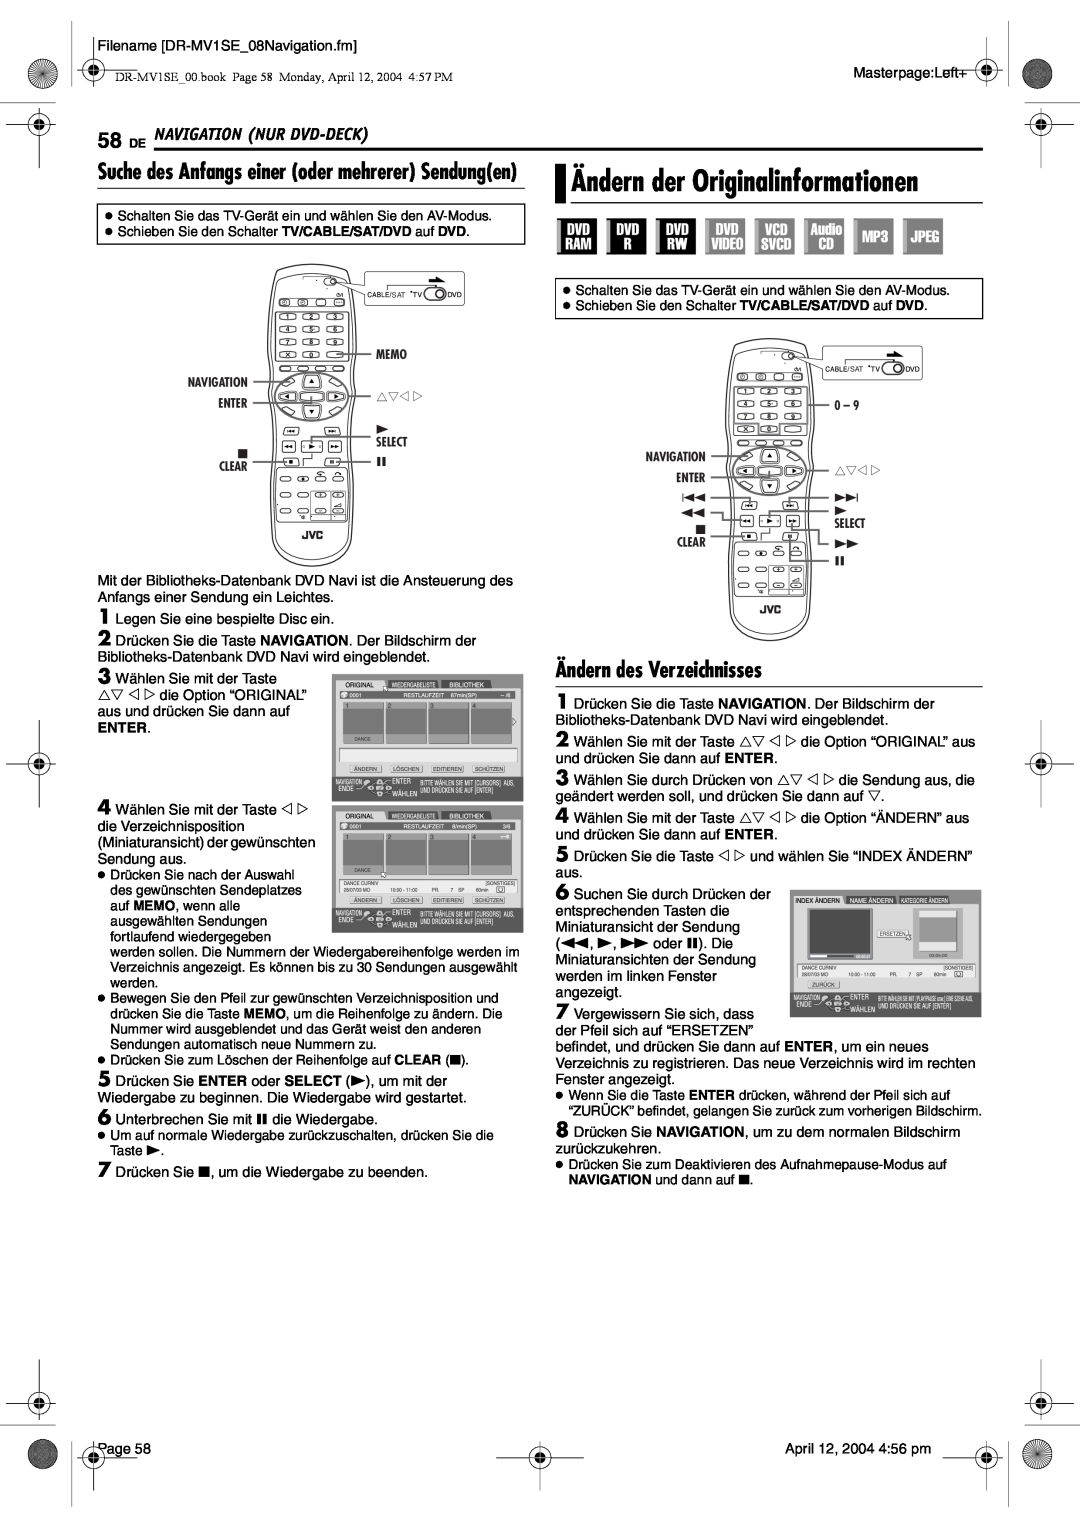 JVC DR-MV1S manual Ändern der Originalinformationen, Ändern des Verzeichnisses, De Navigation Nur Dvd-Deck, Enter 